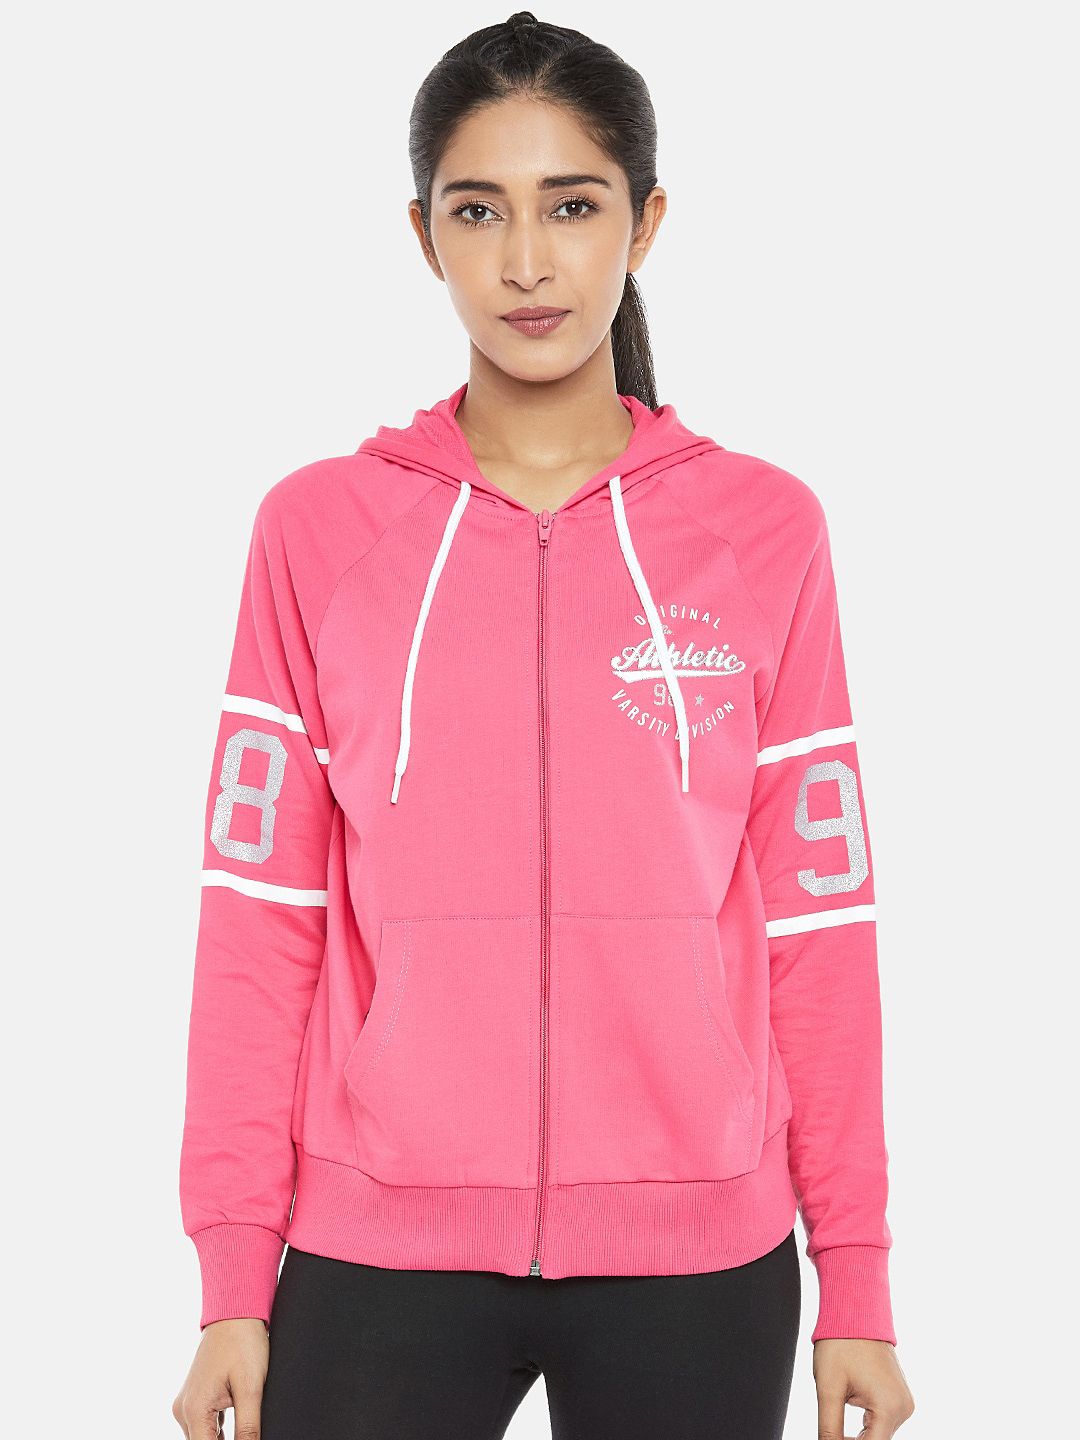 Ajile by Pantaloons Women Pink Printed Hooded Sweatshirt Price in India